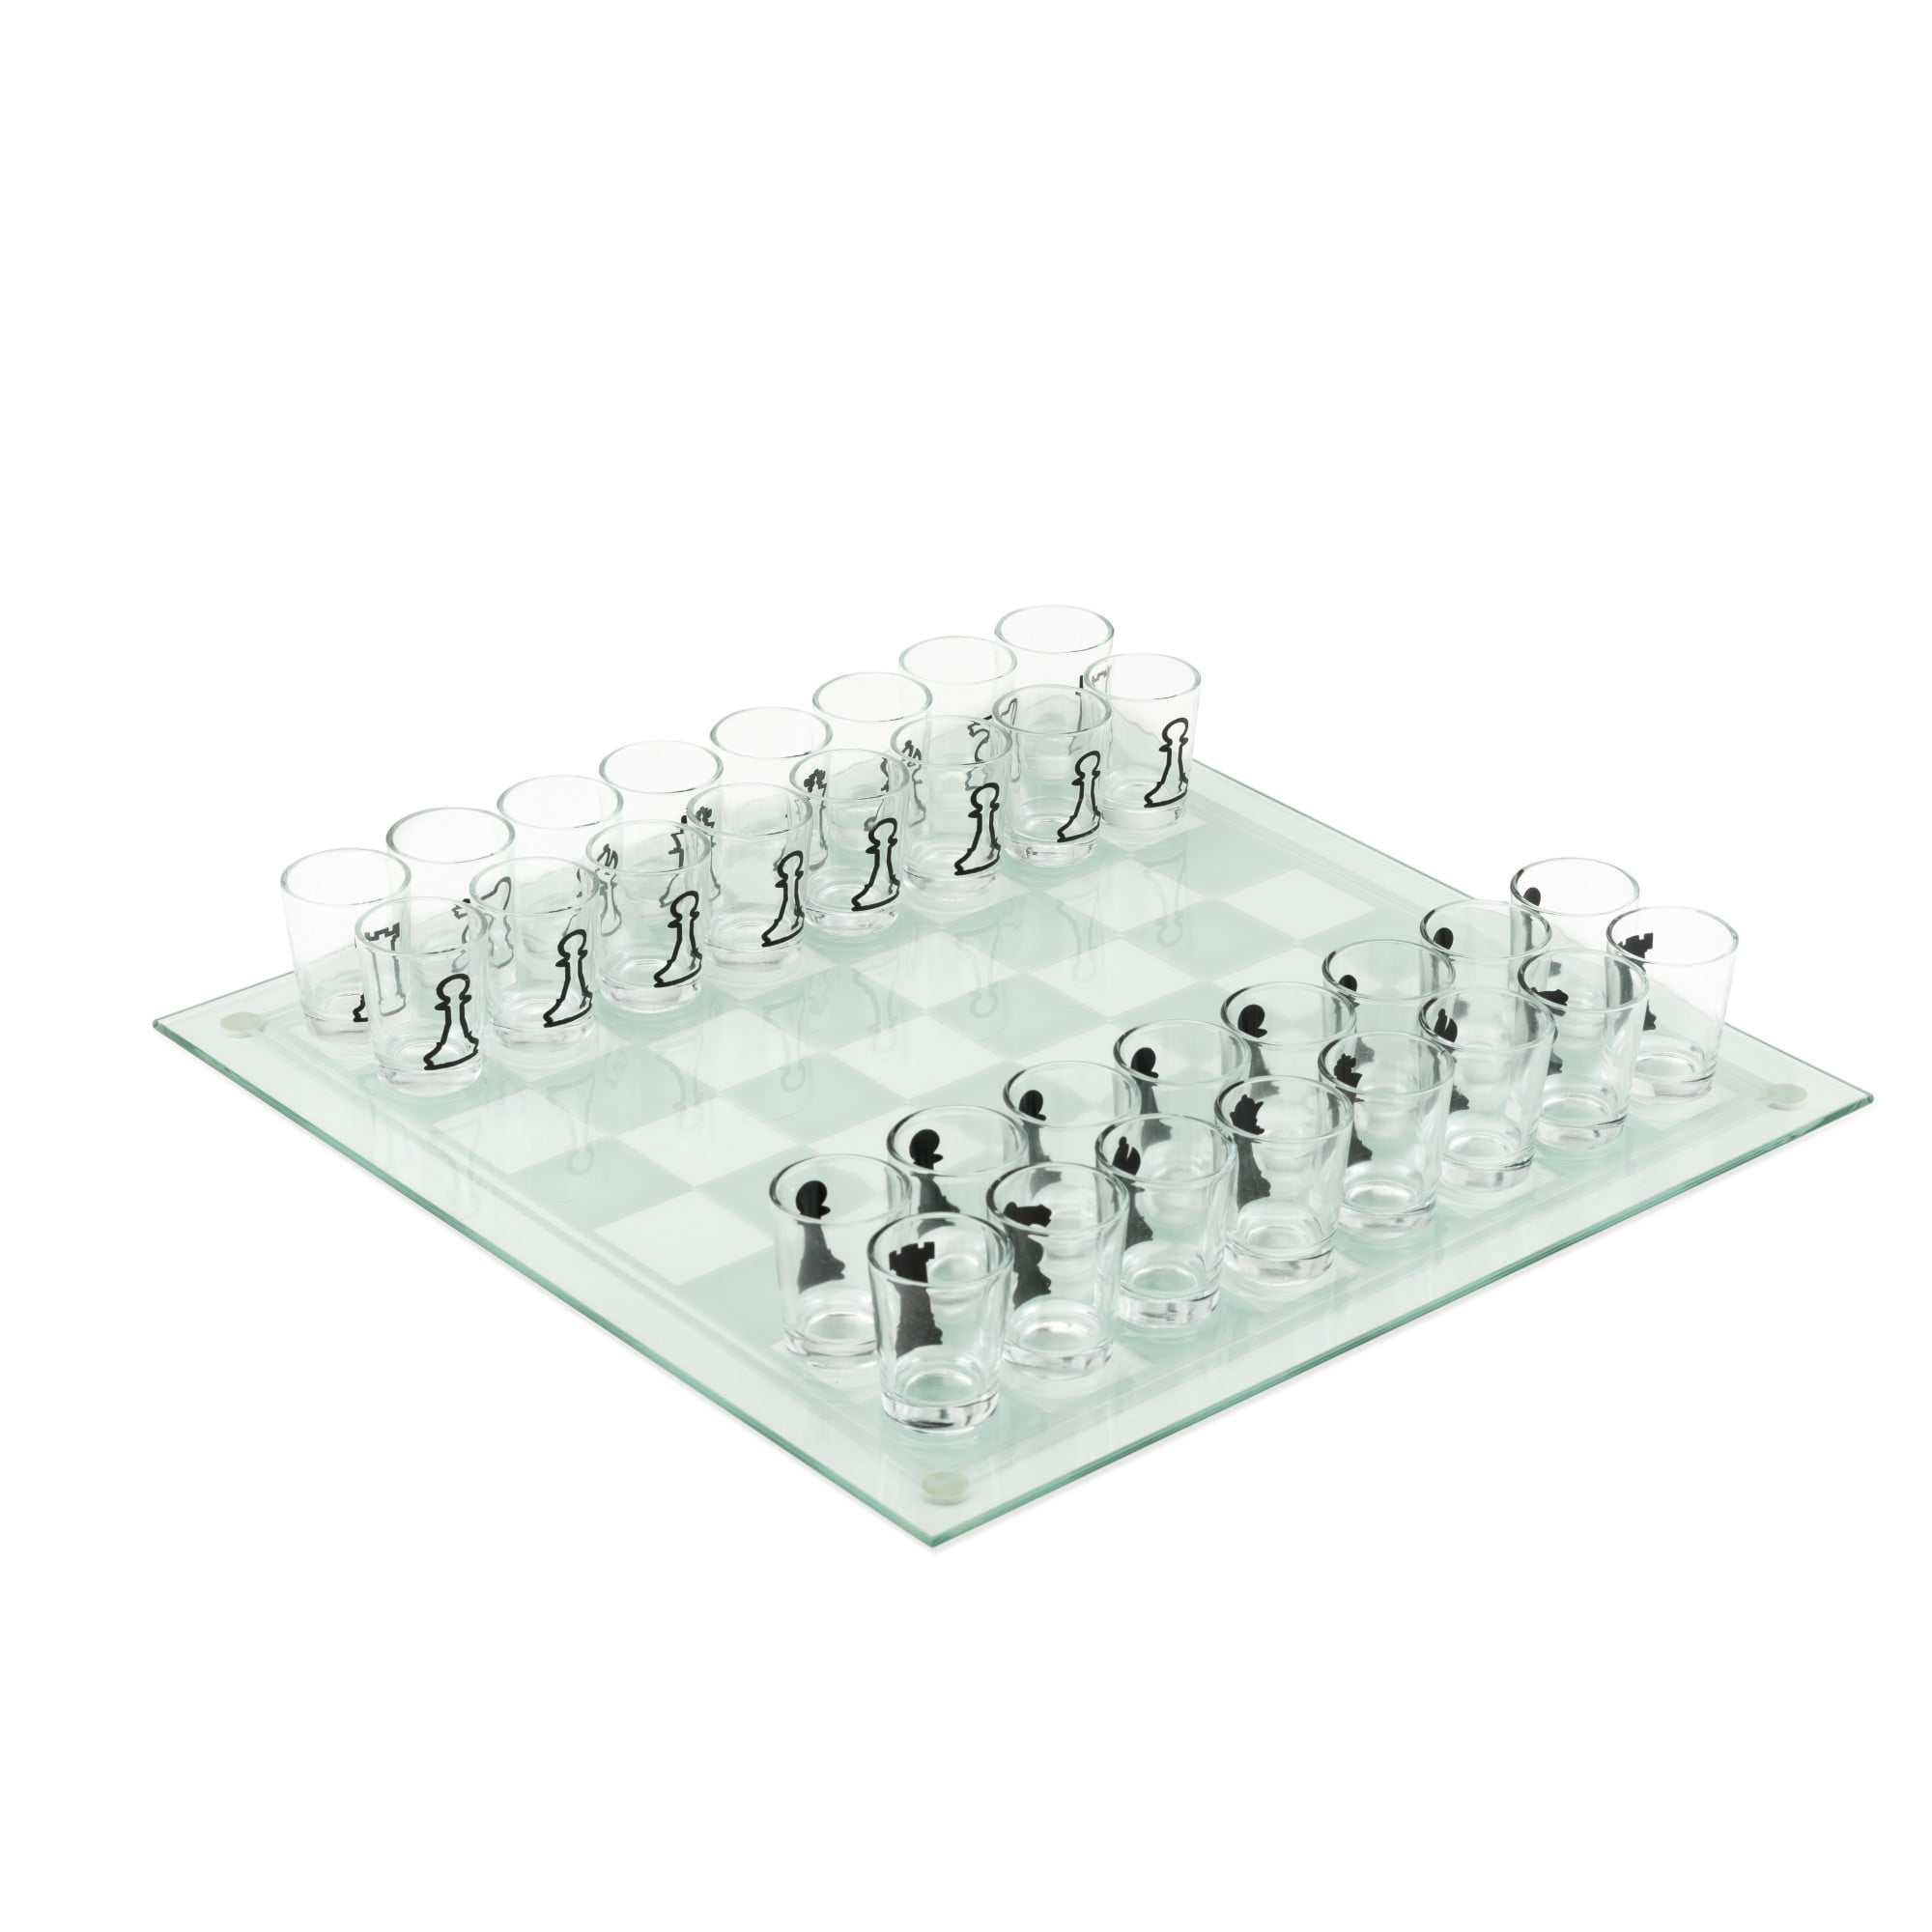 Glass Chessboard Clear Glass Chess Set Handmade w/ Storage Bag Toys 20x20cm 